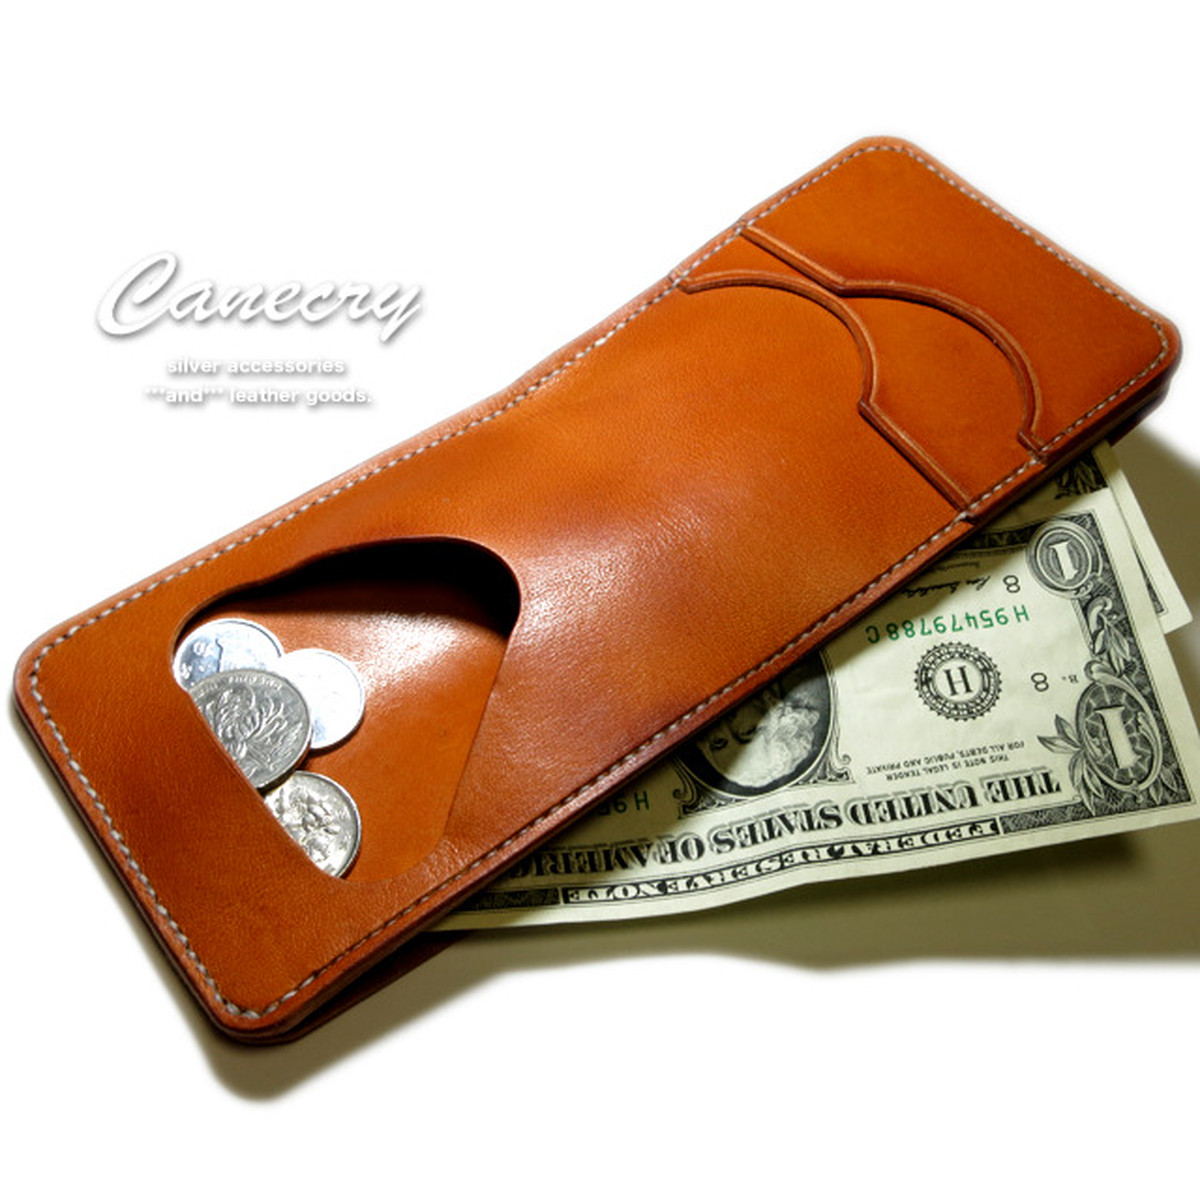 お札とカードが入るコインケース (人はそれを財布と呼ぶ) | 天然石ジュエリーの Canecry